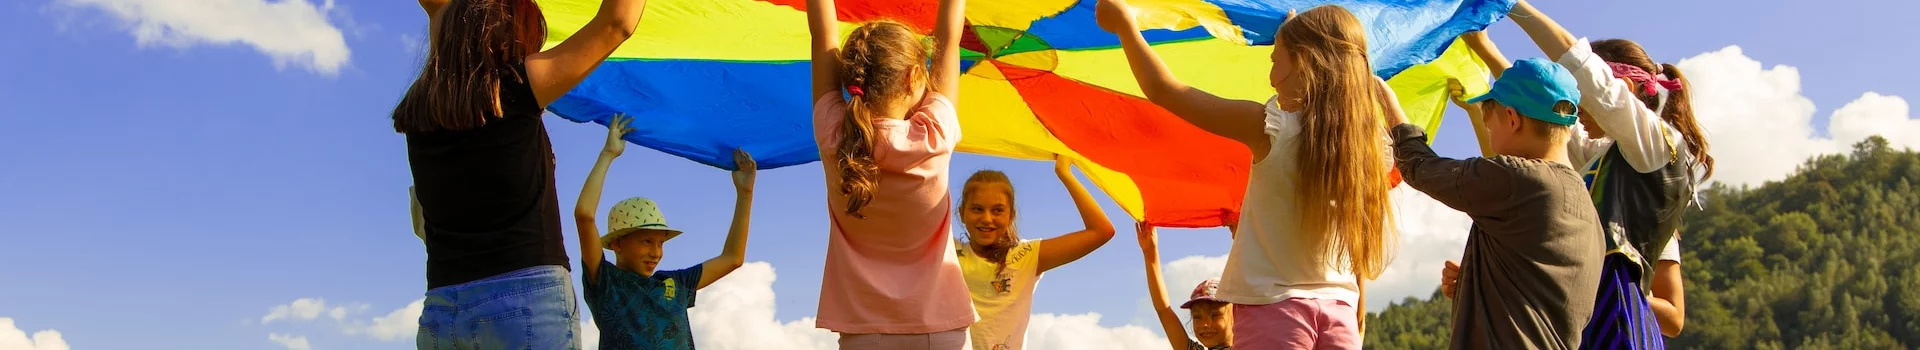 Förderfonds Persönlichkeitsentwicklung - Kinder interagieren mit farbigem Tuch